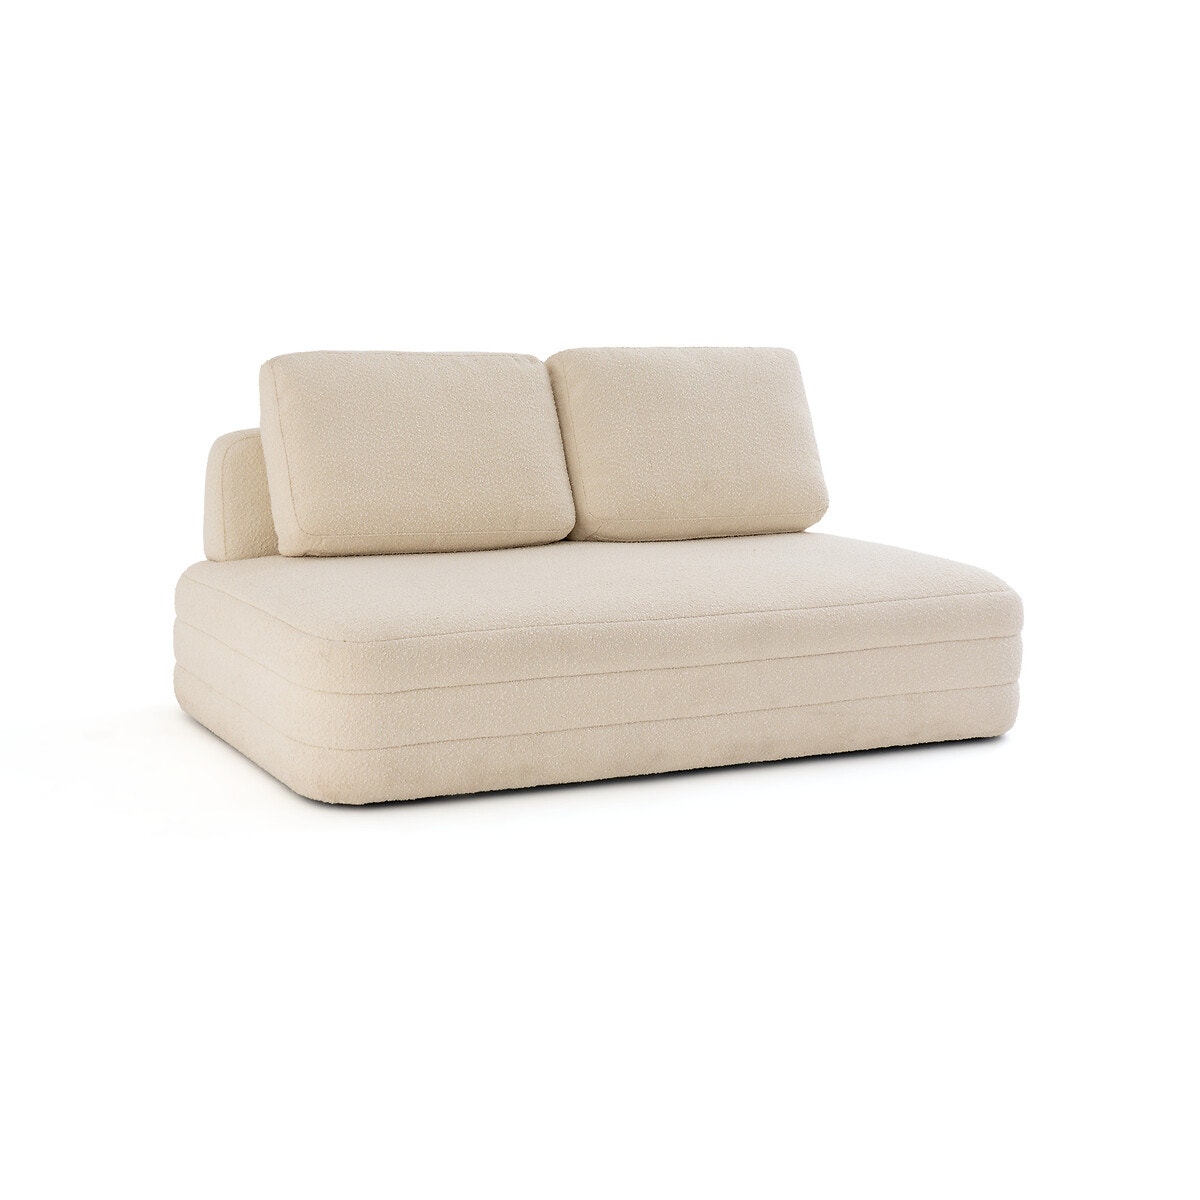 Διθέσιος καναπές με μπουκλέ ταπετσαρία, Rocca